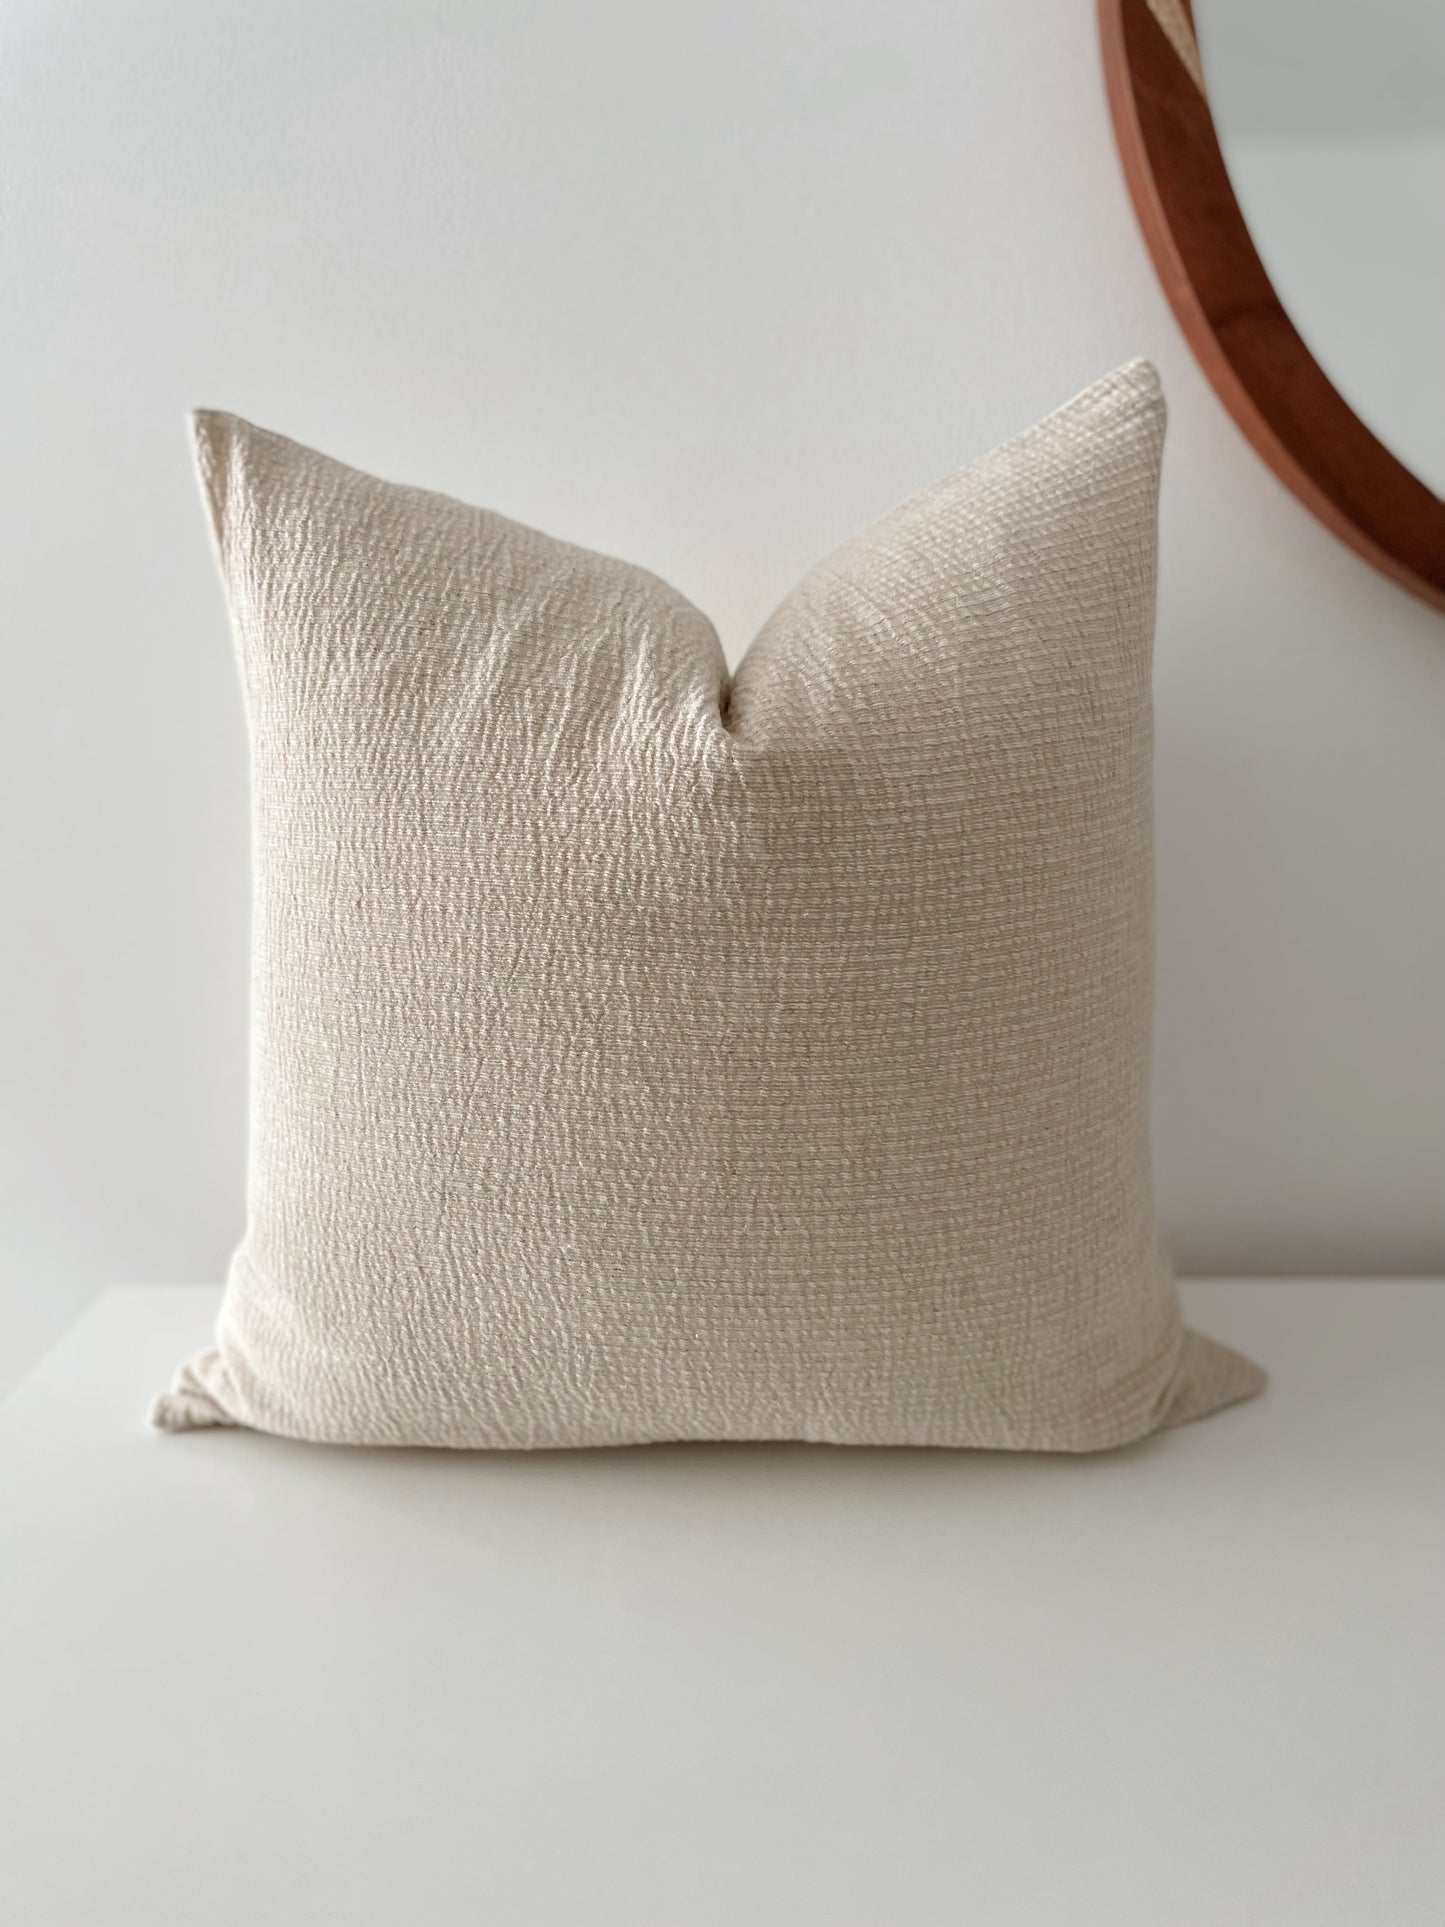 Blair Woven Pillow Cover